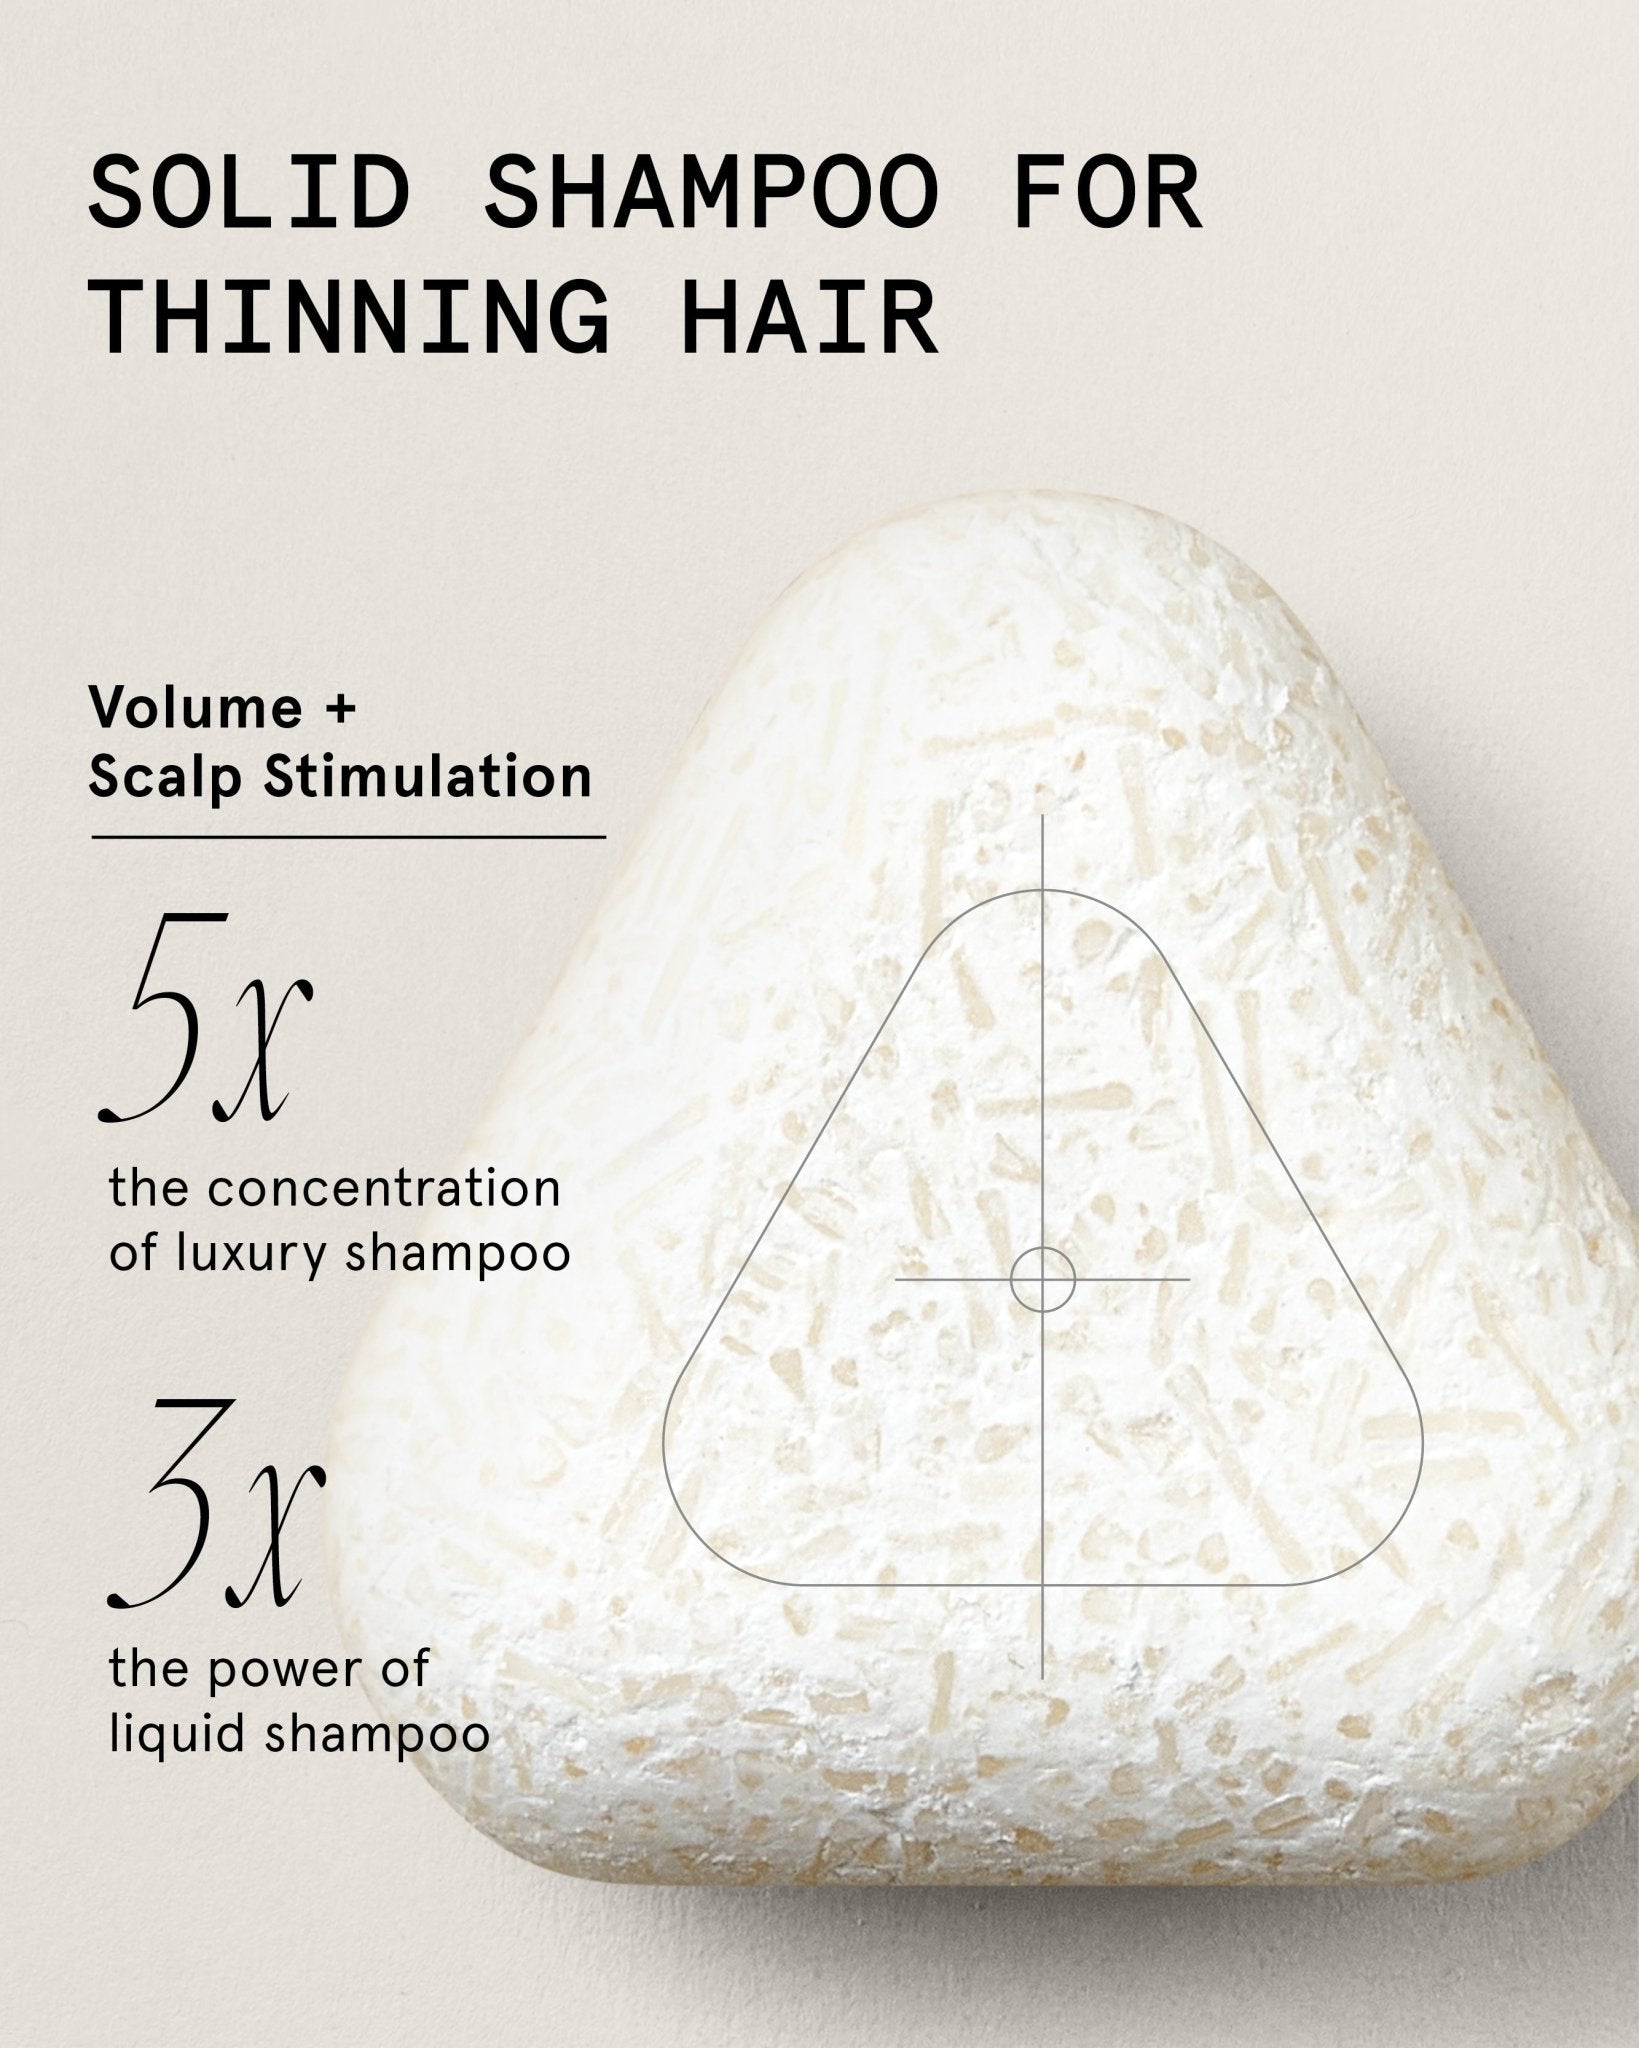 Strengthening & Scalp Stimulating Shampoo For Thinning Hair - Superzero - Consumerhaus